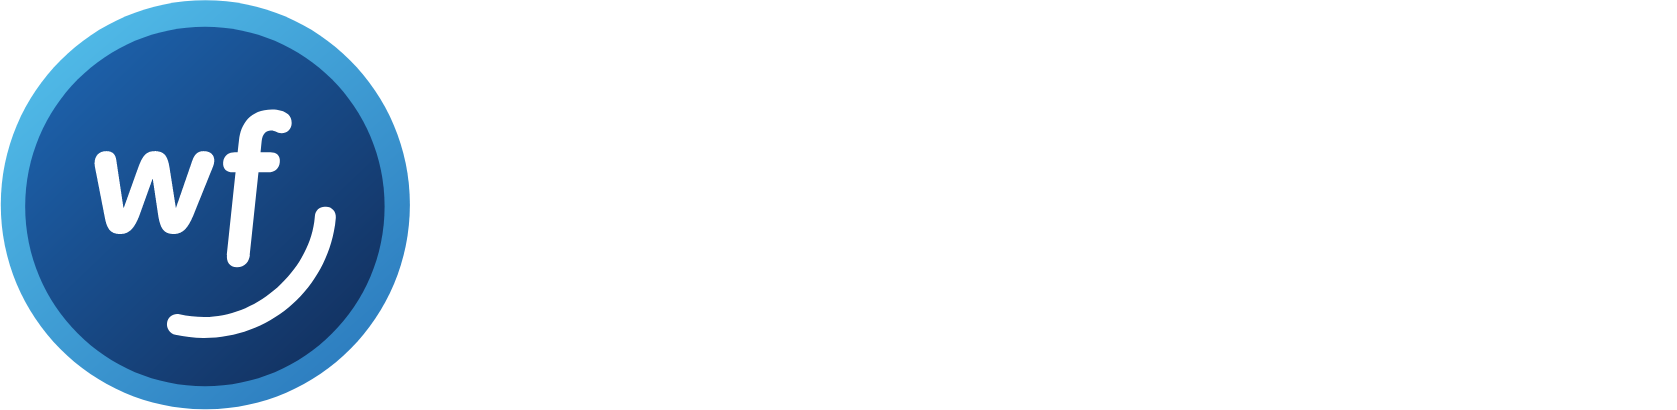 World Acceptance Corporation logo large for dark backgrounds (transparent PNG)